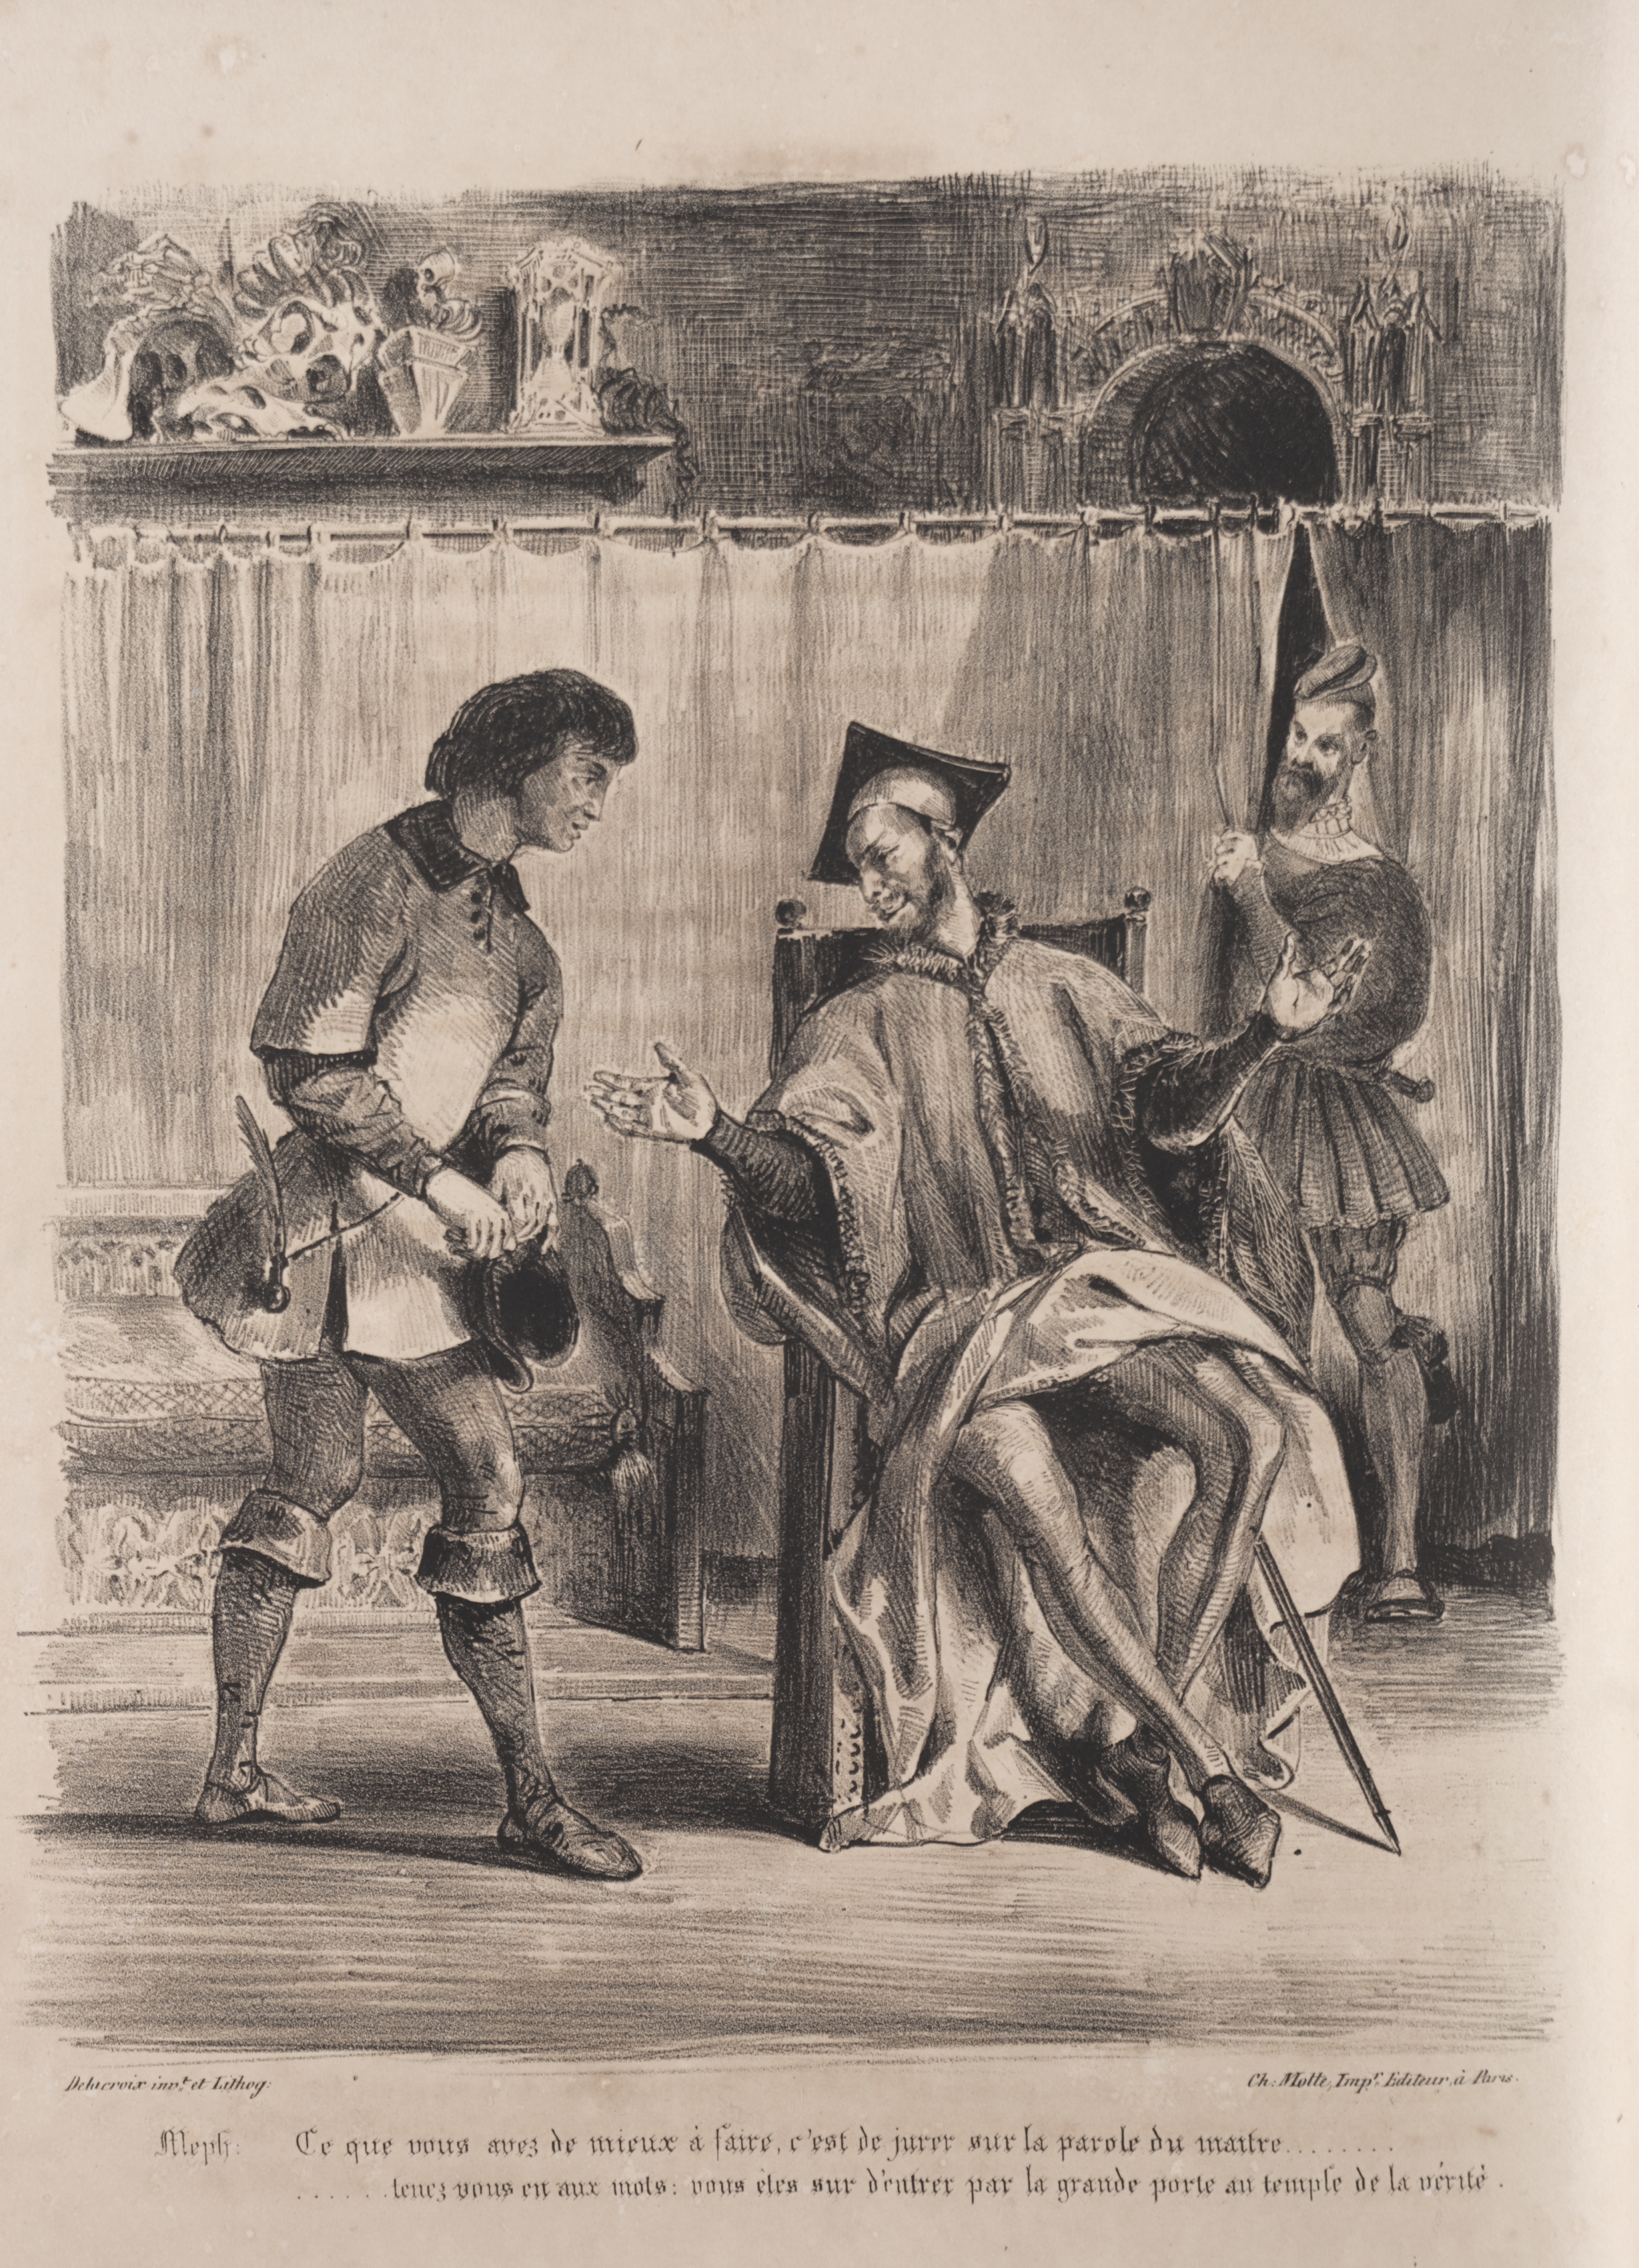 Illustrations for Faust: Méphistophélé receives the schoolboy